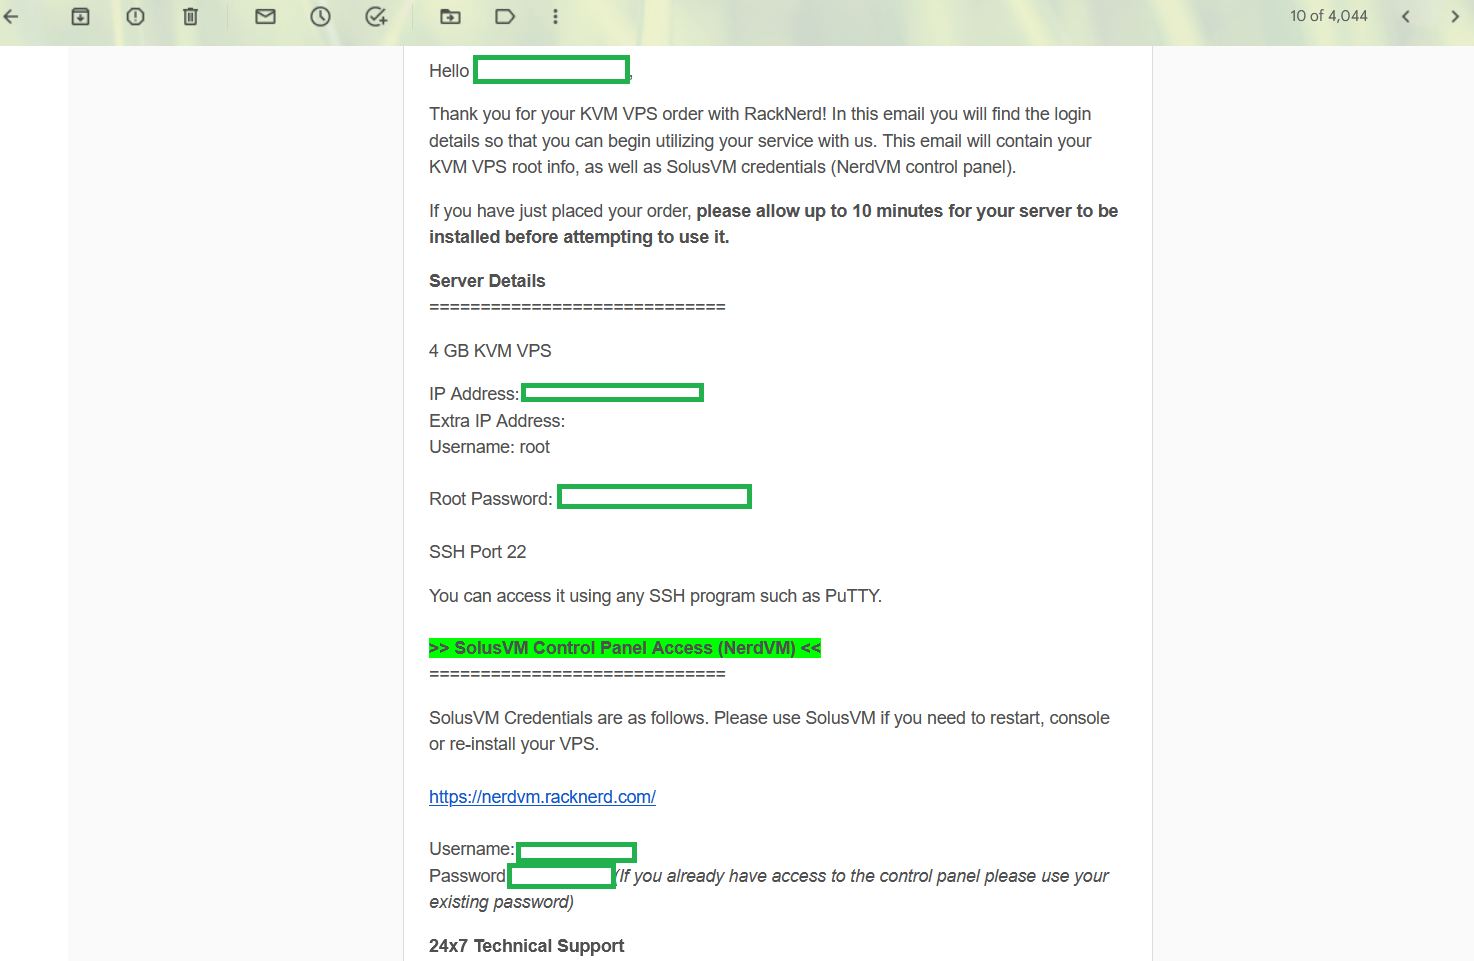 Racknerd VPS Email Confirmation